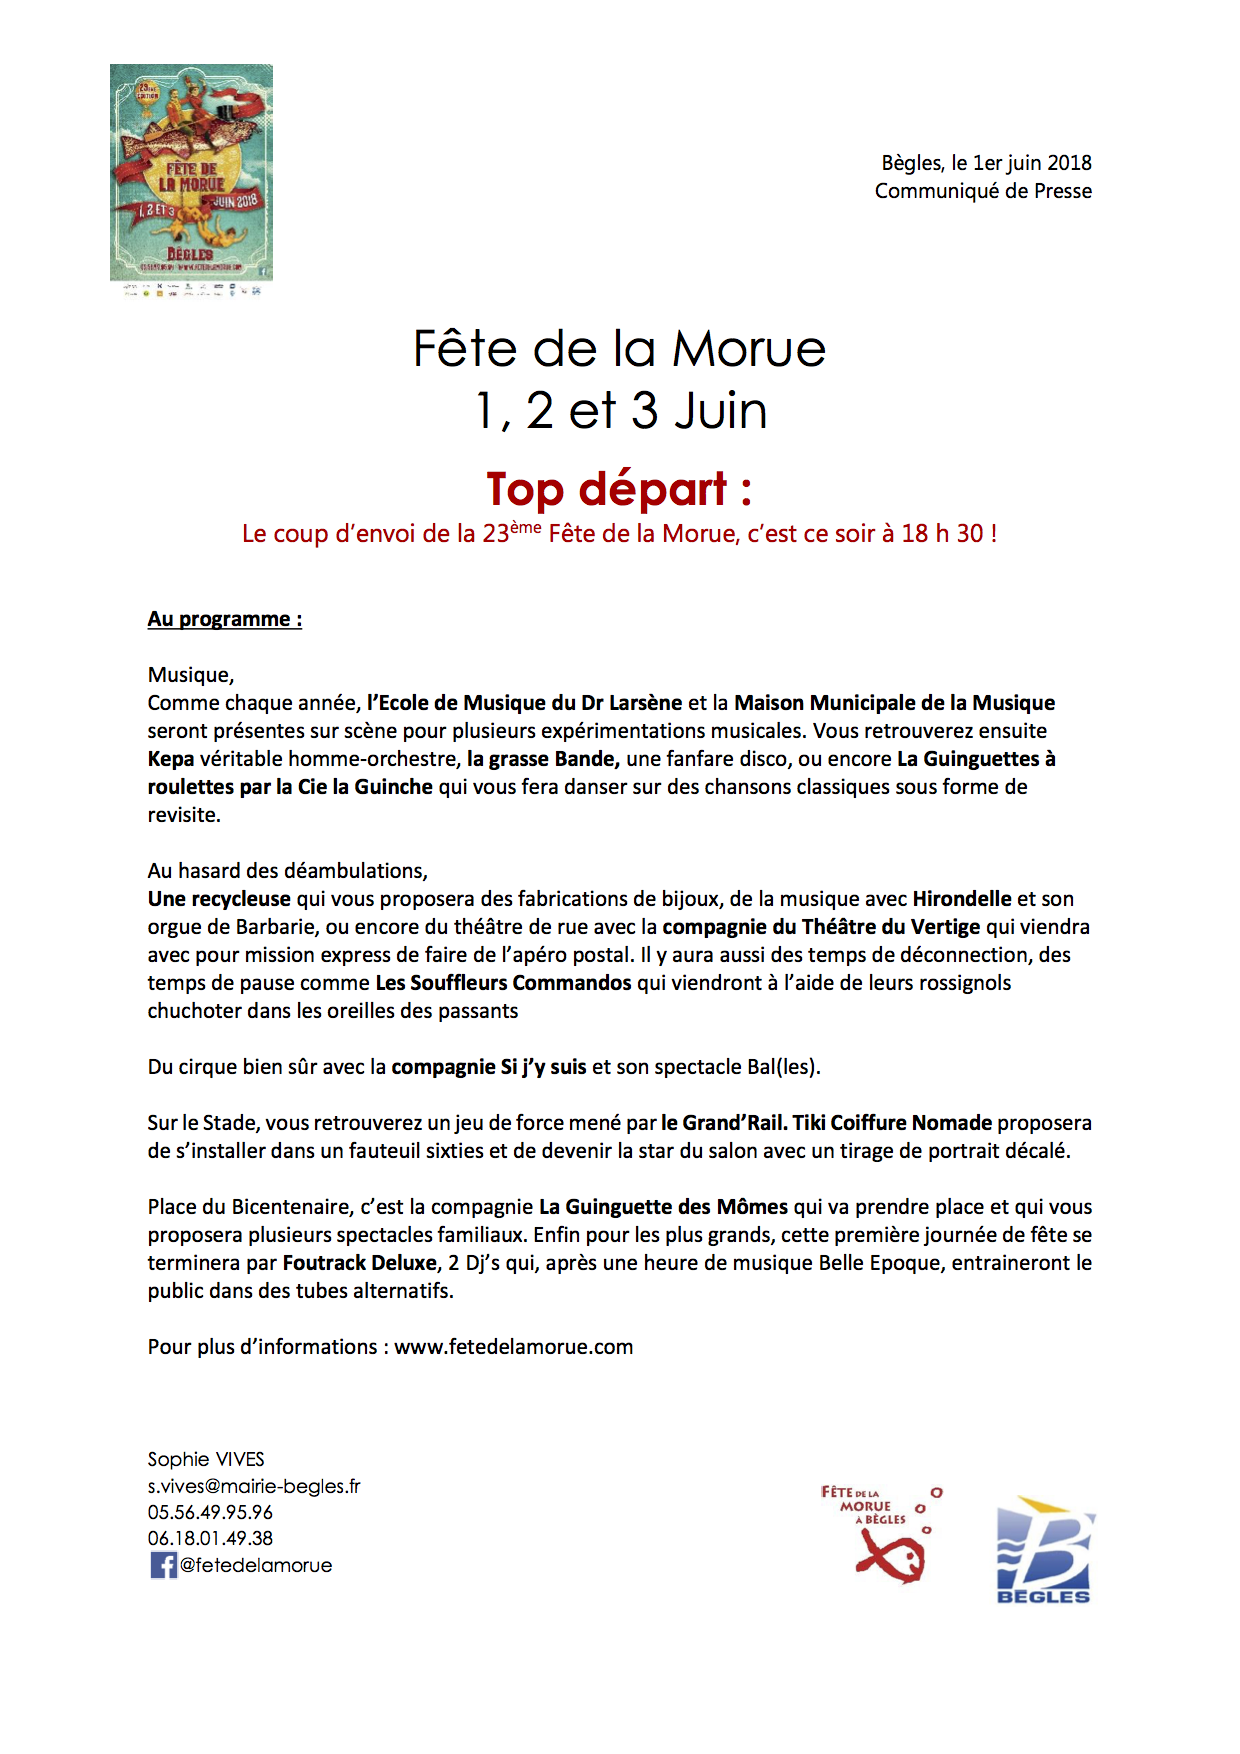 top-depart-fe%cc%82te-de-la-morue